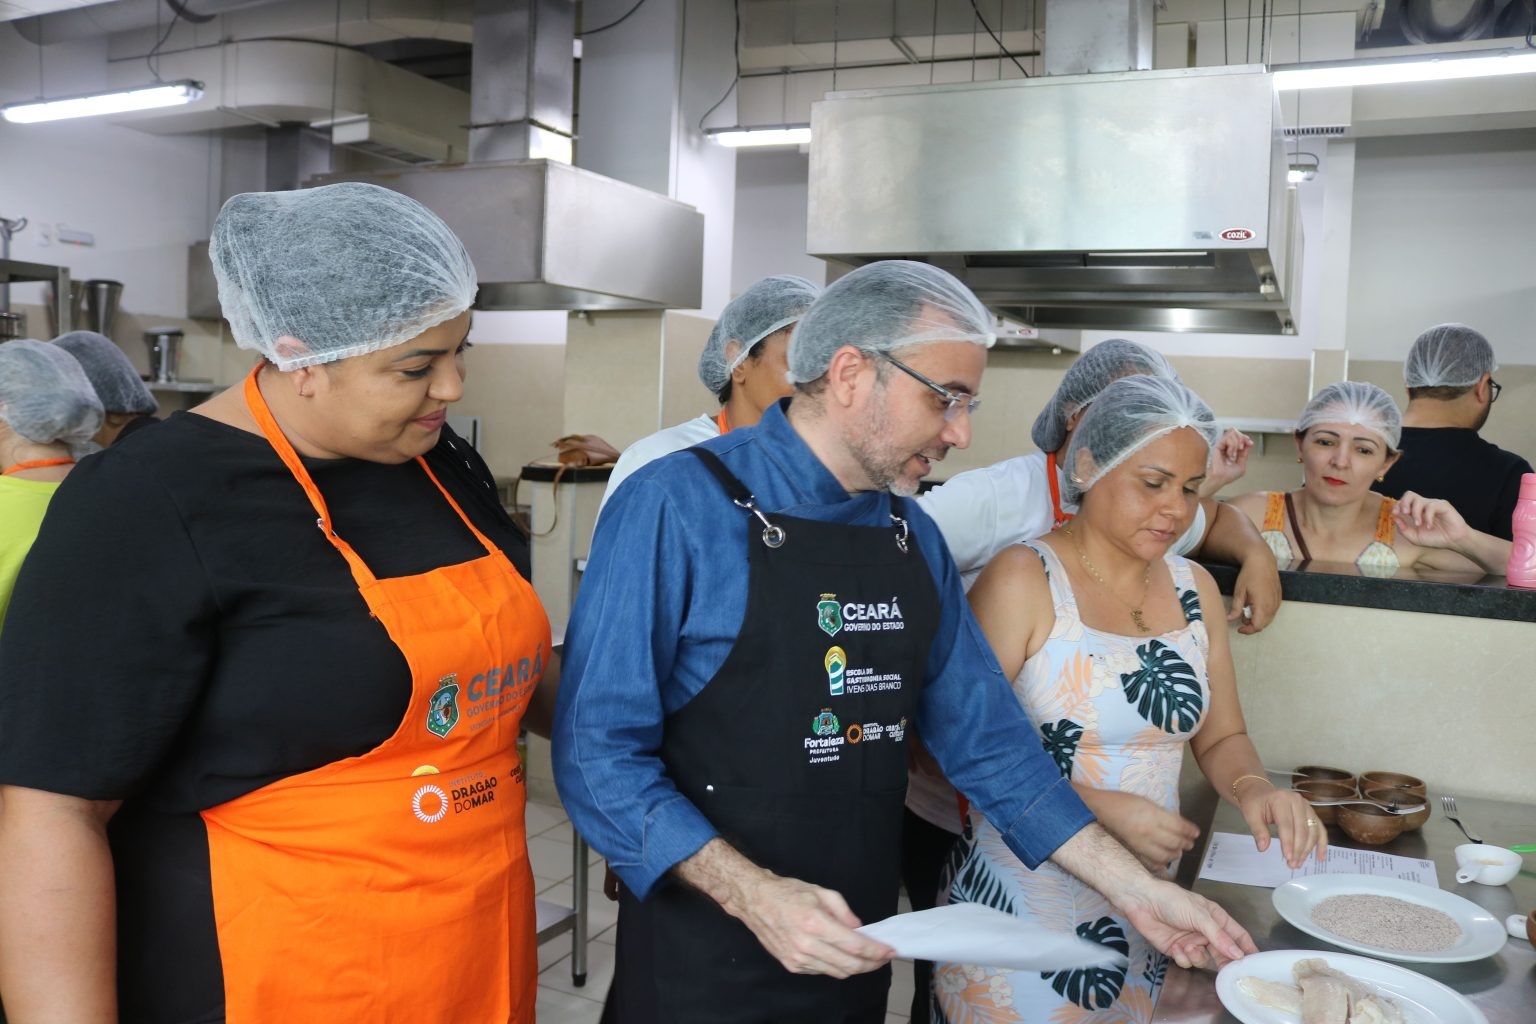 Em uma cozinha industrial, um homem branco, de touca e avental azul-marinho ministra uma aula de gastronomia para diversos alunos e alunas.